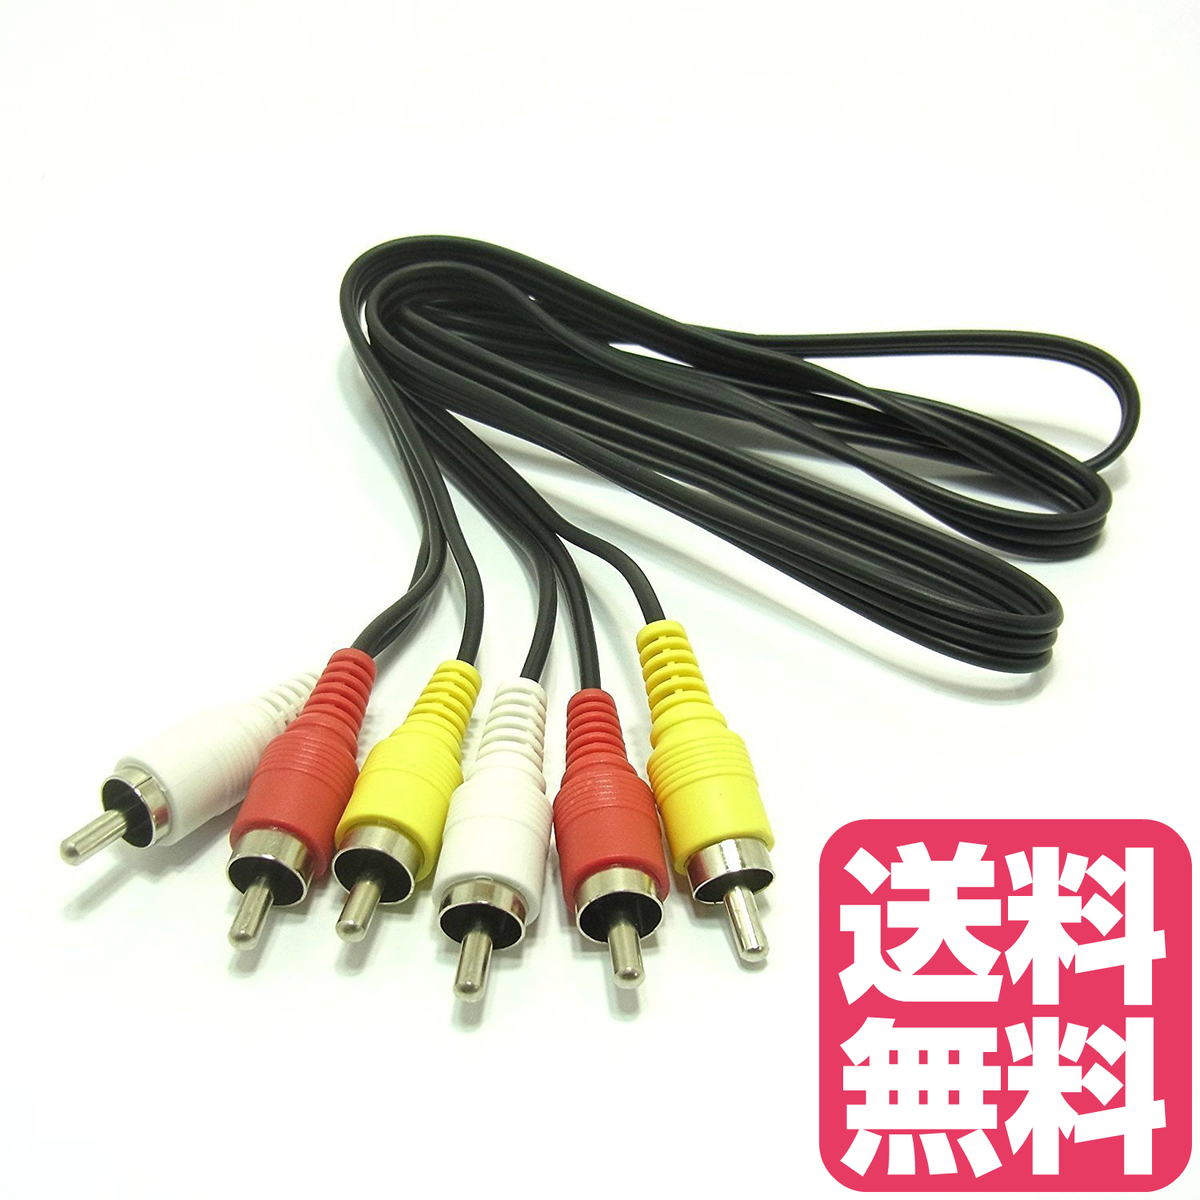 送料無料 AVコード 赤白黄 ピンコード RCA プラグ 1.0m ブラック 1本 ケーブル ３ピン−３ピンケーブル用途多彩 アナログケーブル RCA端子 電気信号 映像 音響機器　JPY